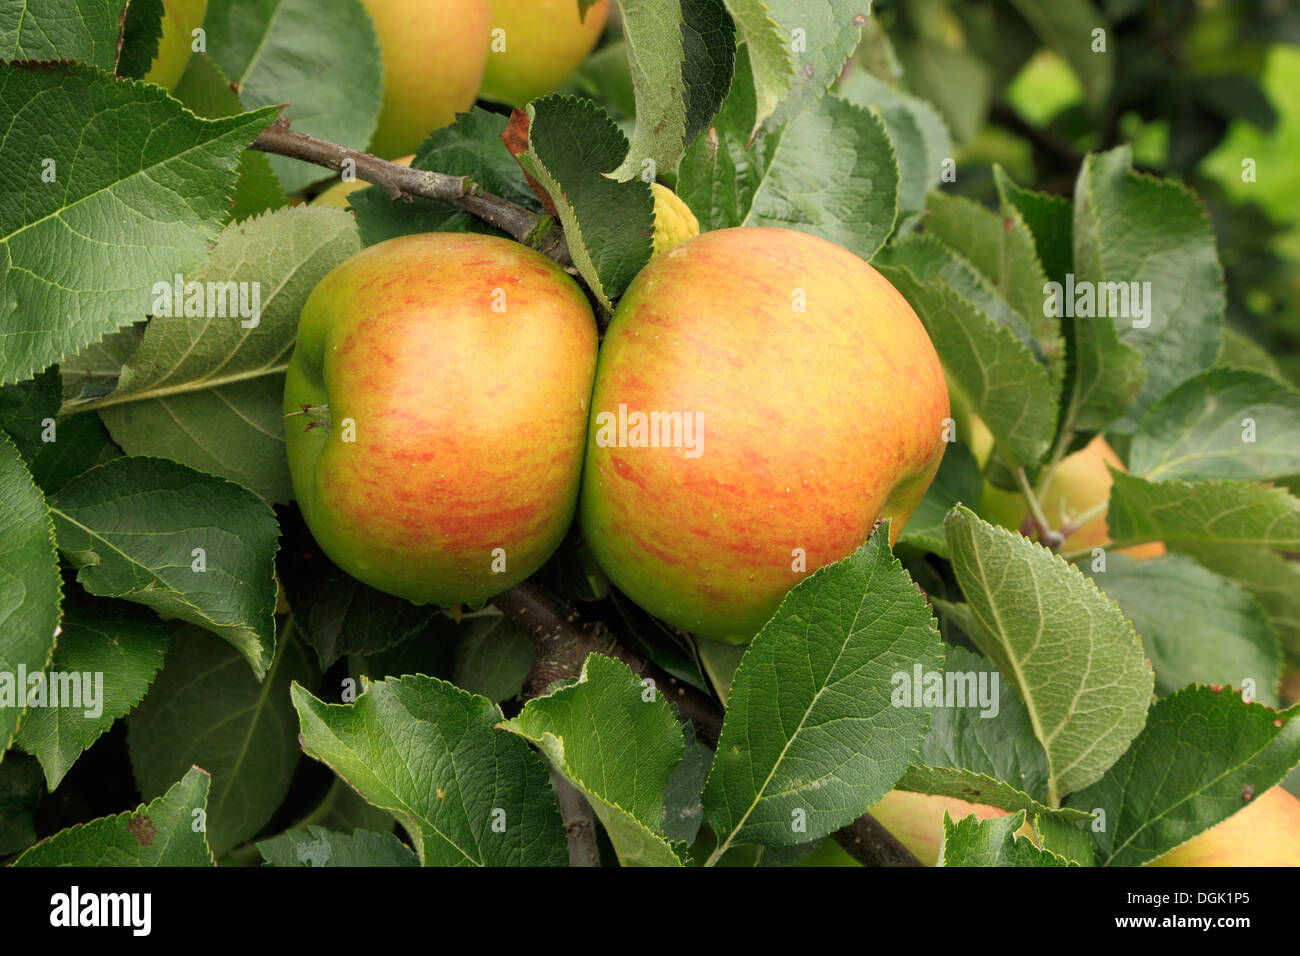 Apple 'Bramley's Seedling', syn. 'Bramley', malus domestica apples variety varieties growing on tree Stock Photo